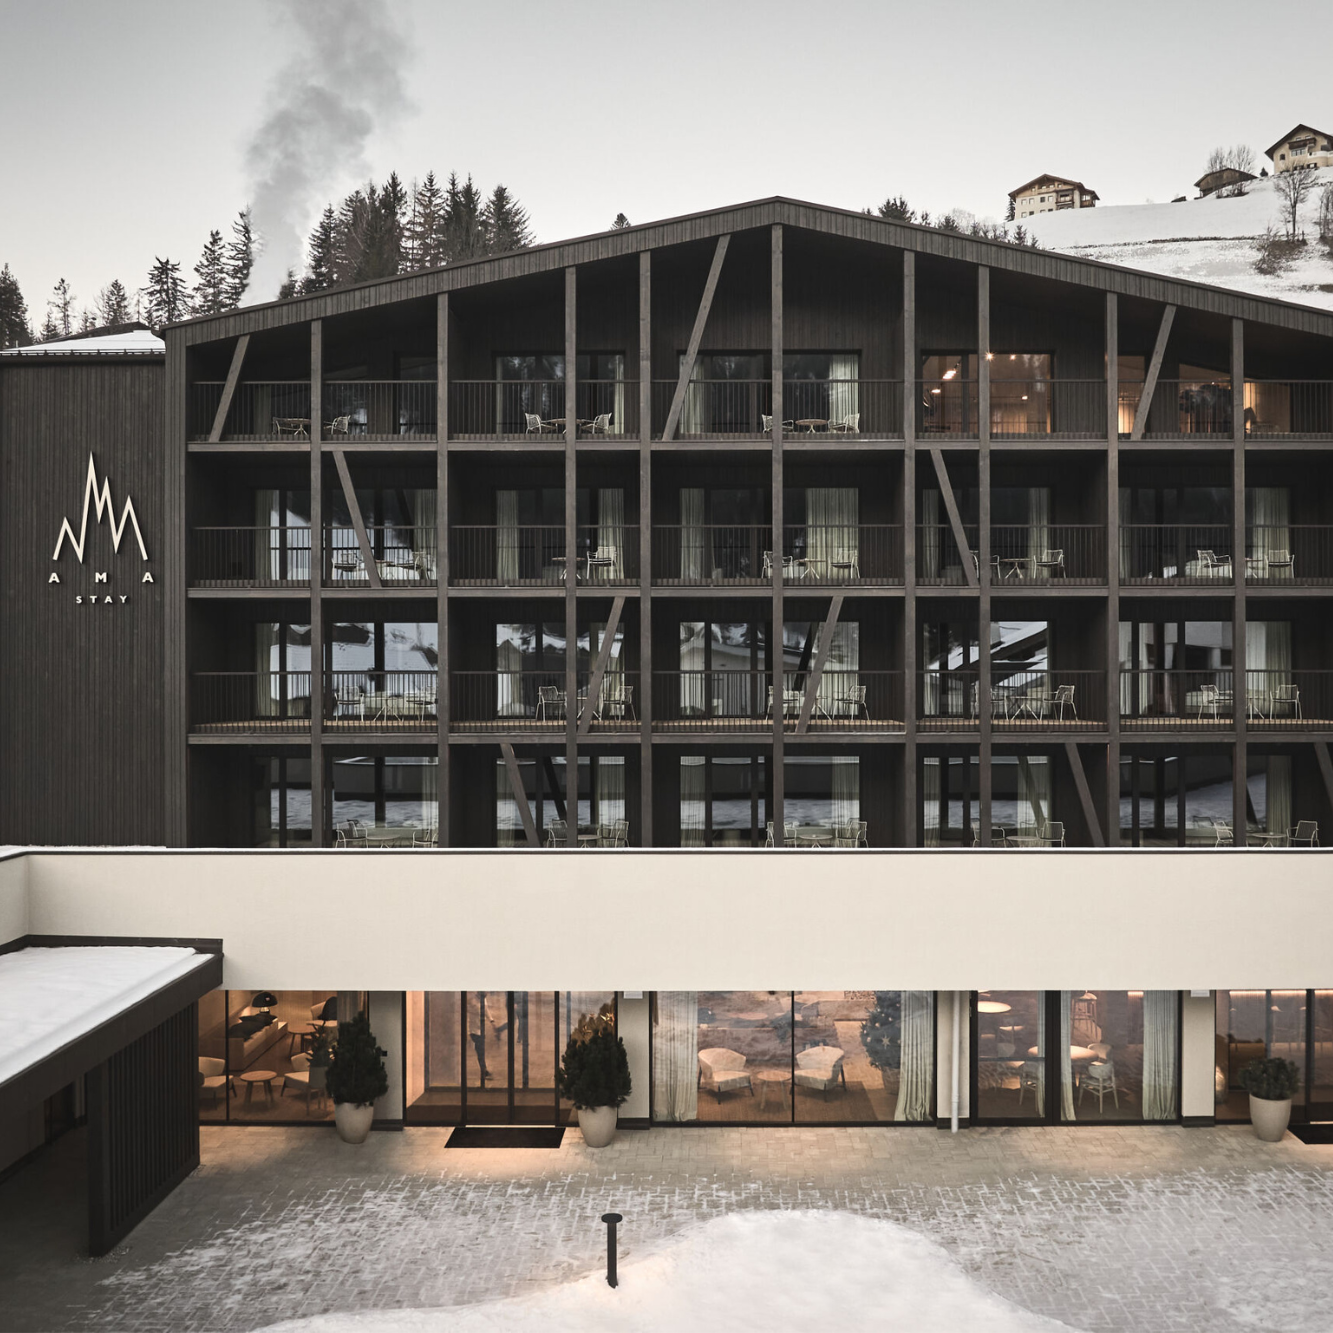 Ein modernes Hotel mit schwarzer Holzfassade und vielen Balkonen